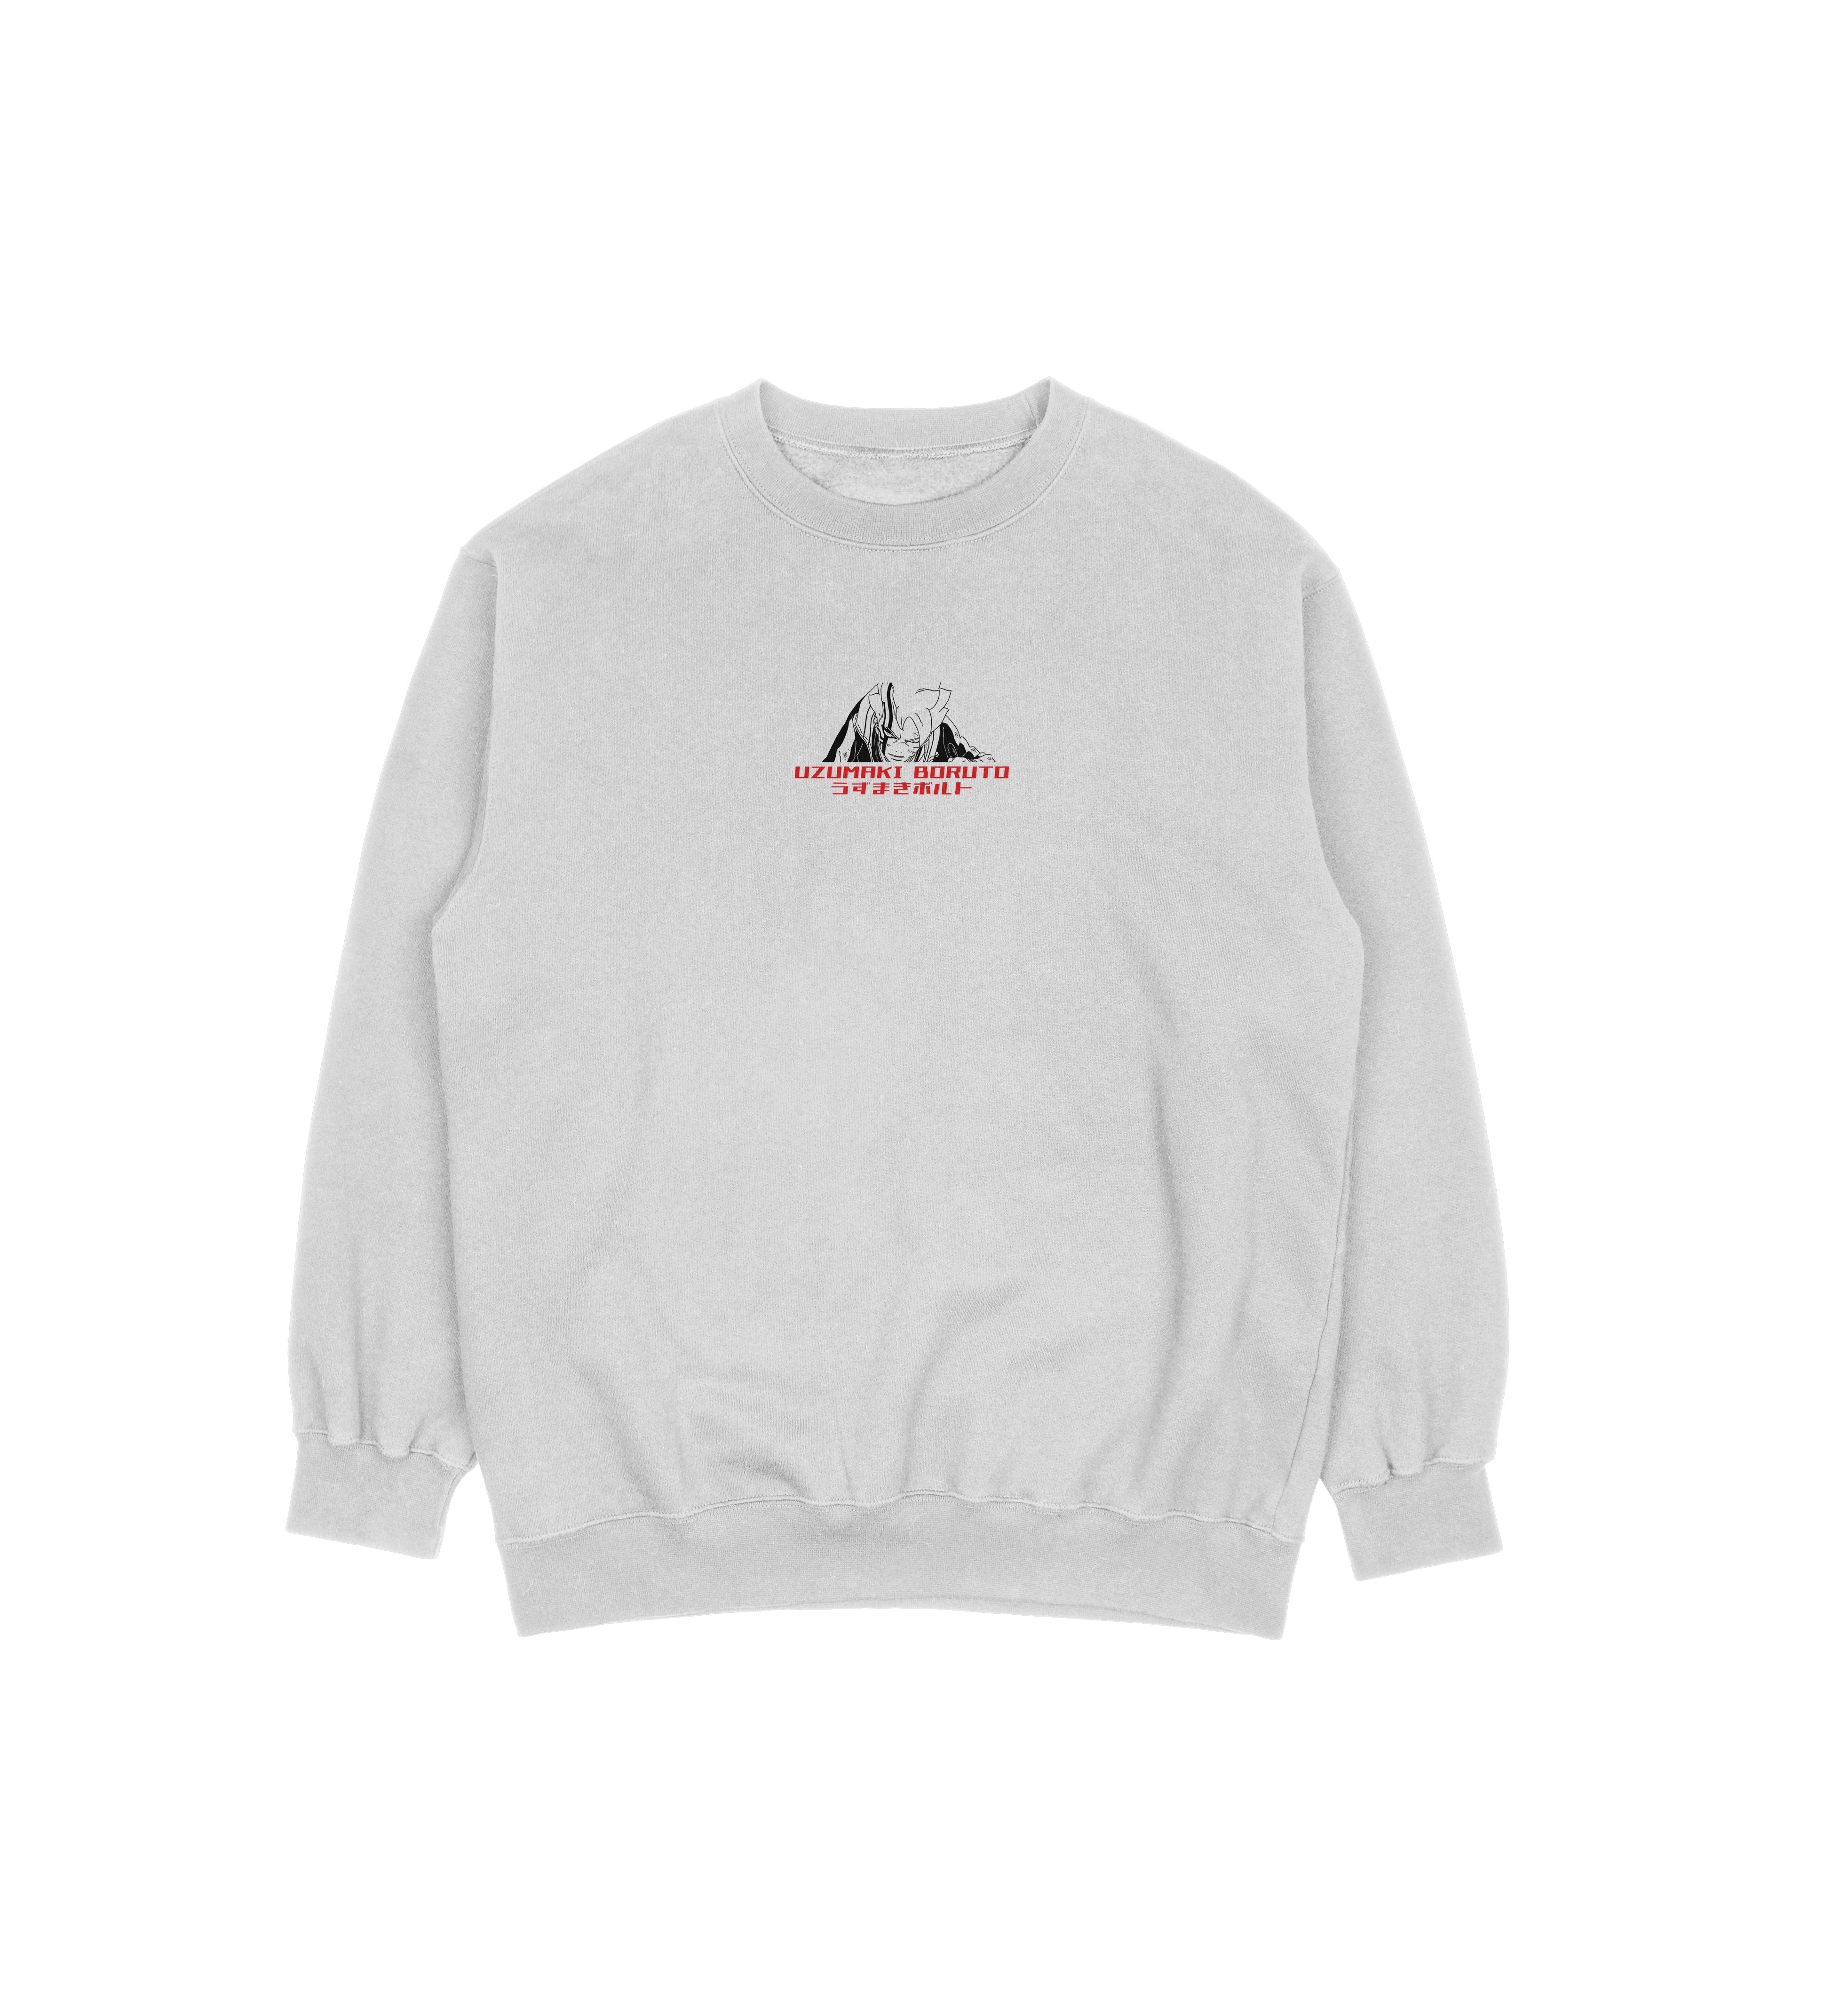 Uzumaki Boruto | White Sweatshirt